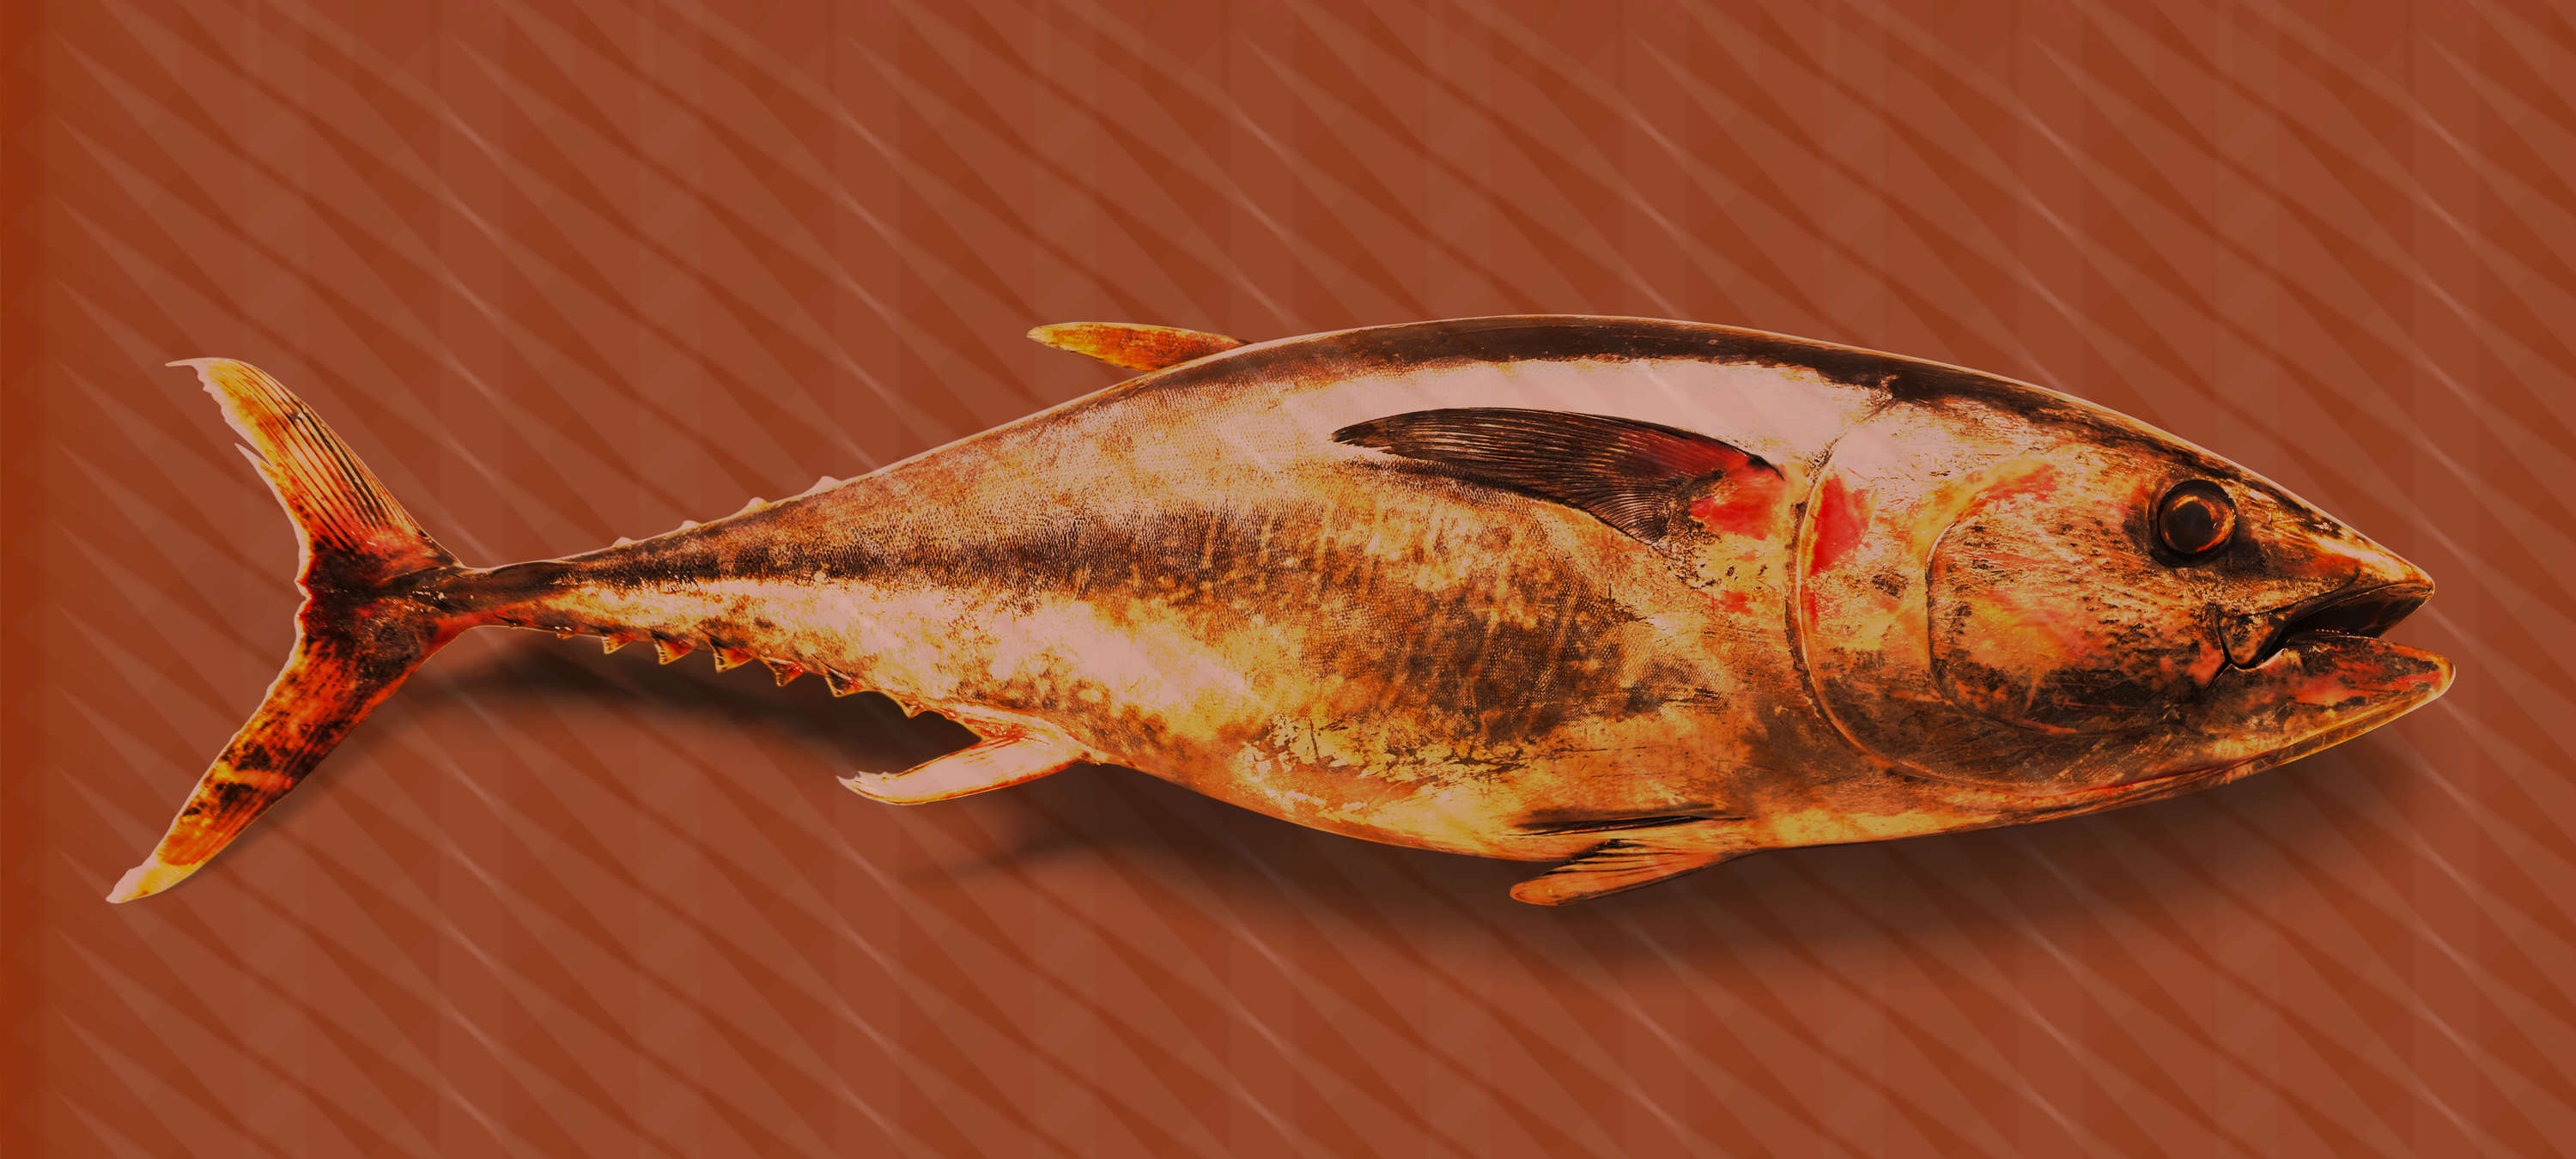             Thunfisch-Tapete im Pop Art, Fisch & Streifen Design – Rot, Orange, Gelb
        